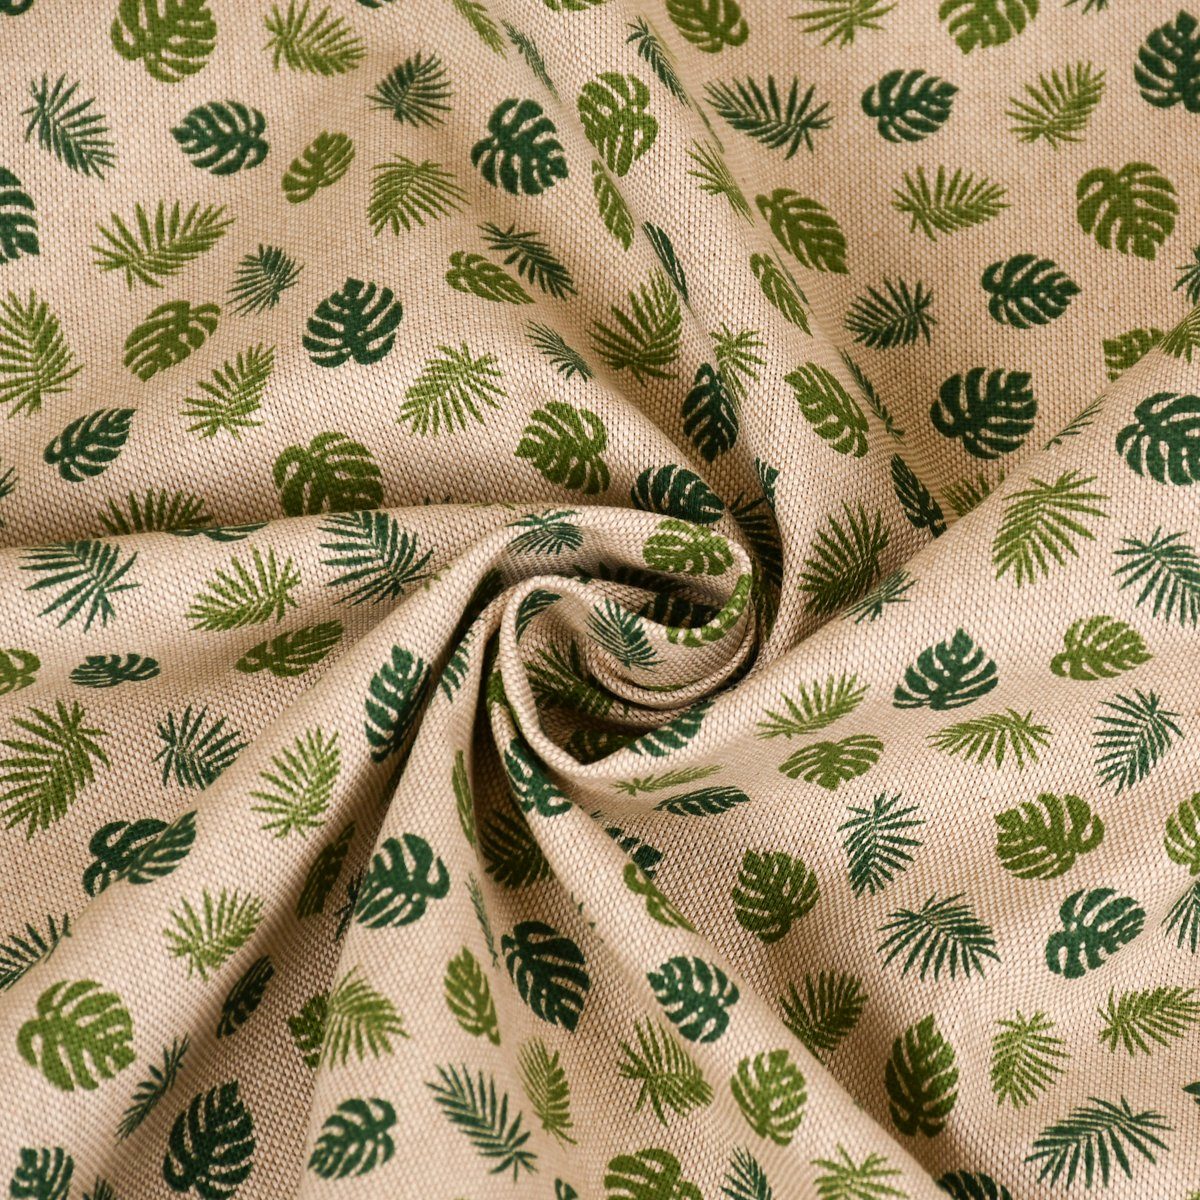 Blätter SCHÖNER natur handmade Tischläufer LEBEN. grün, SCHÖNER Monstera Leaf LEBEN. Jungle Tischläufer